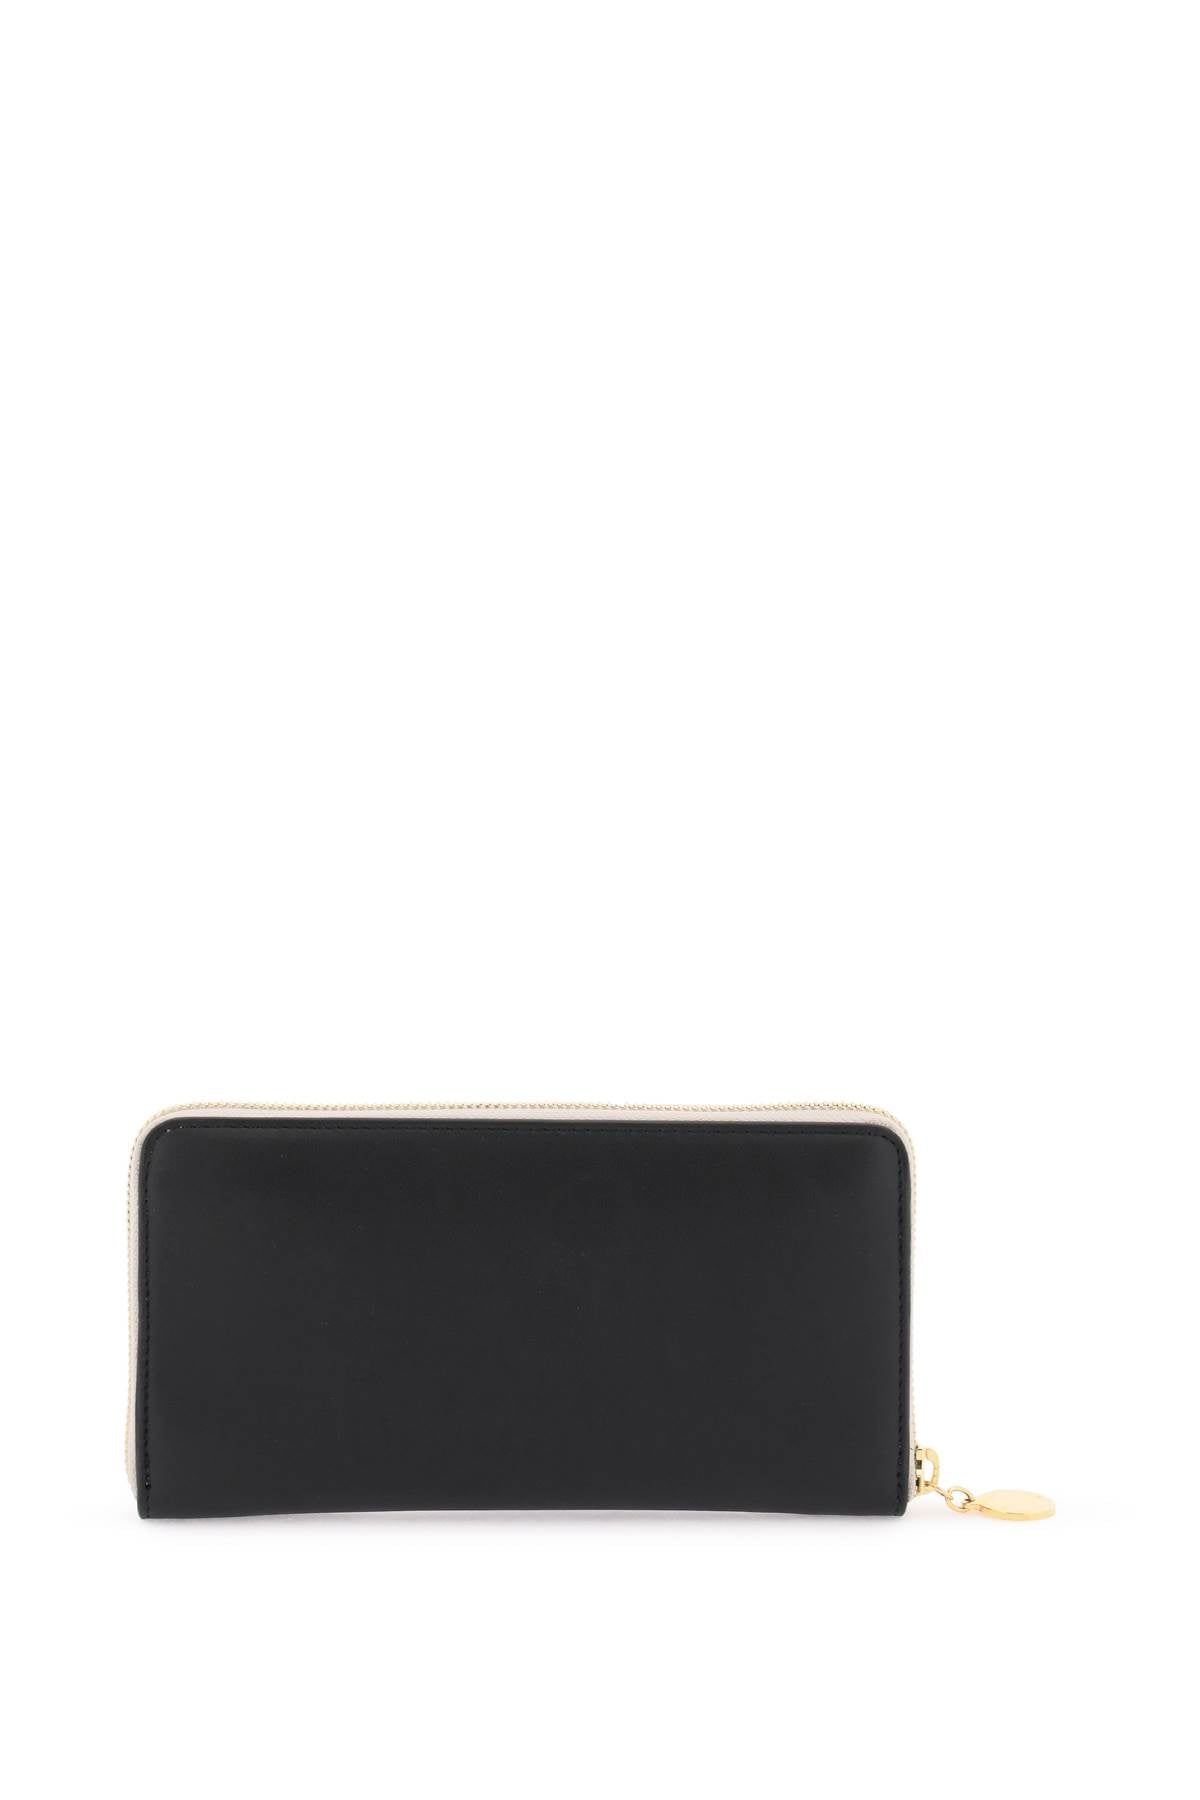 Stella mccartney faux leather zip-around wallet